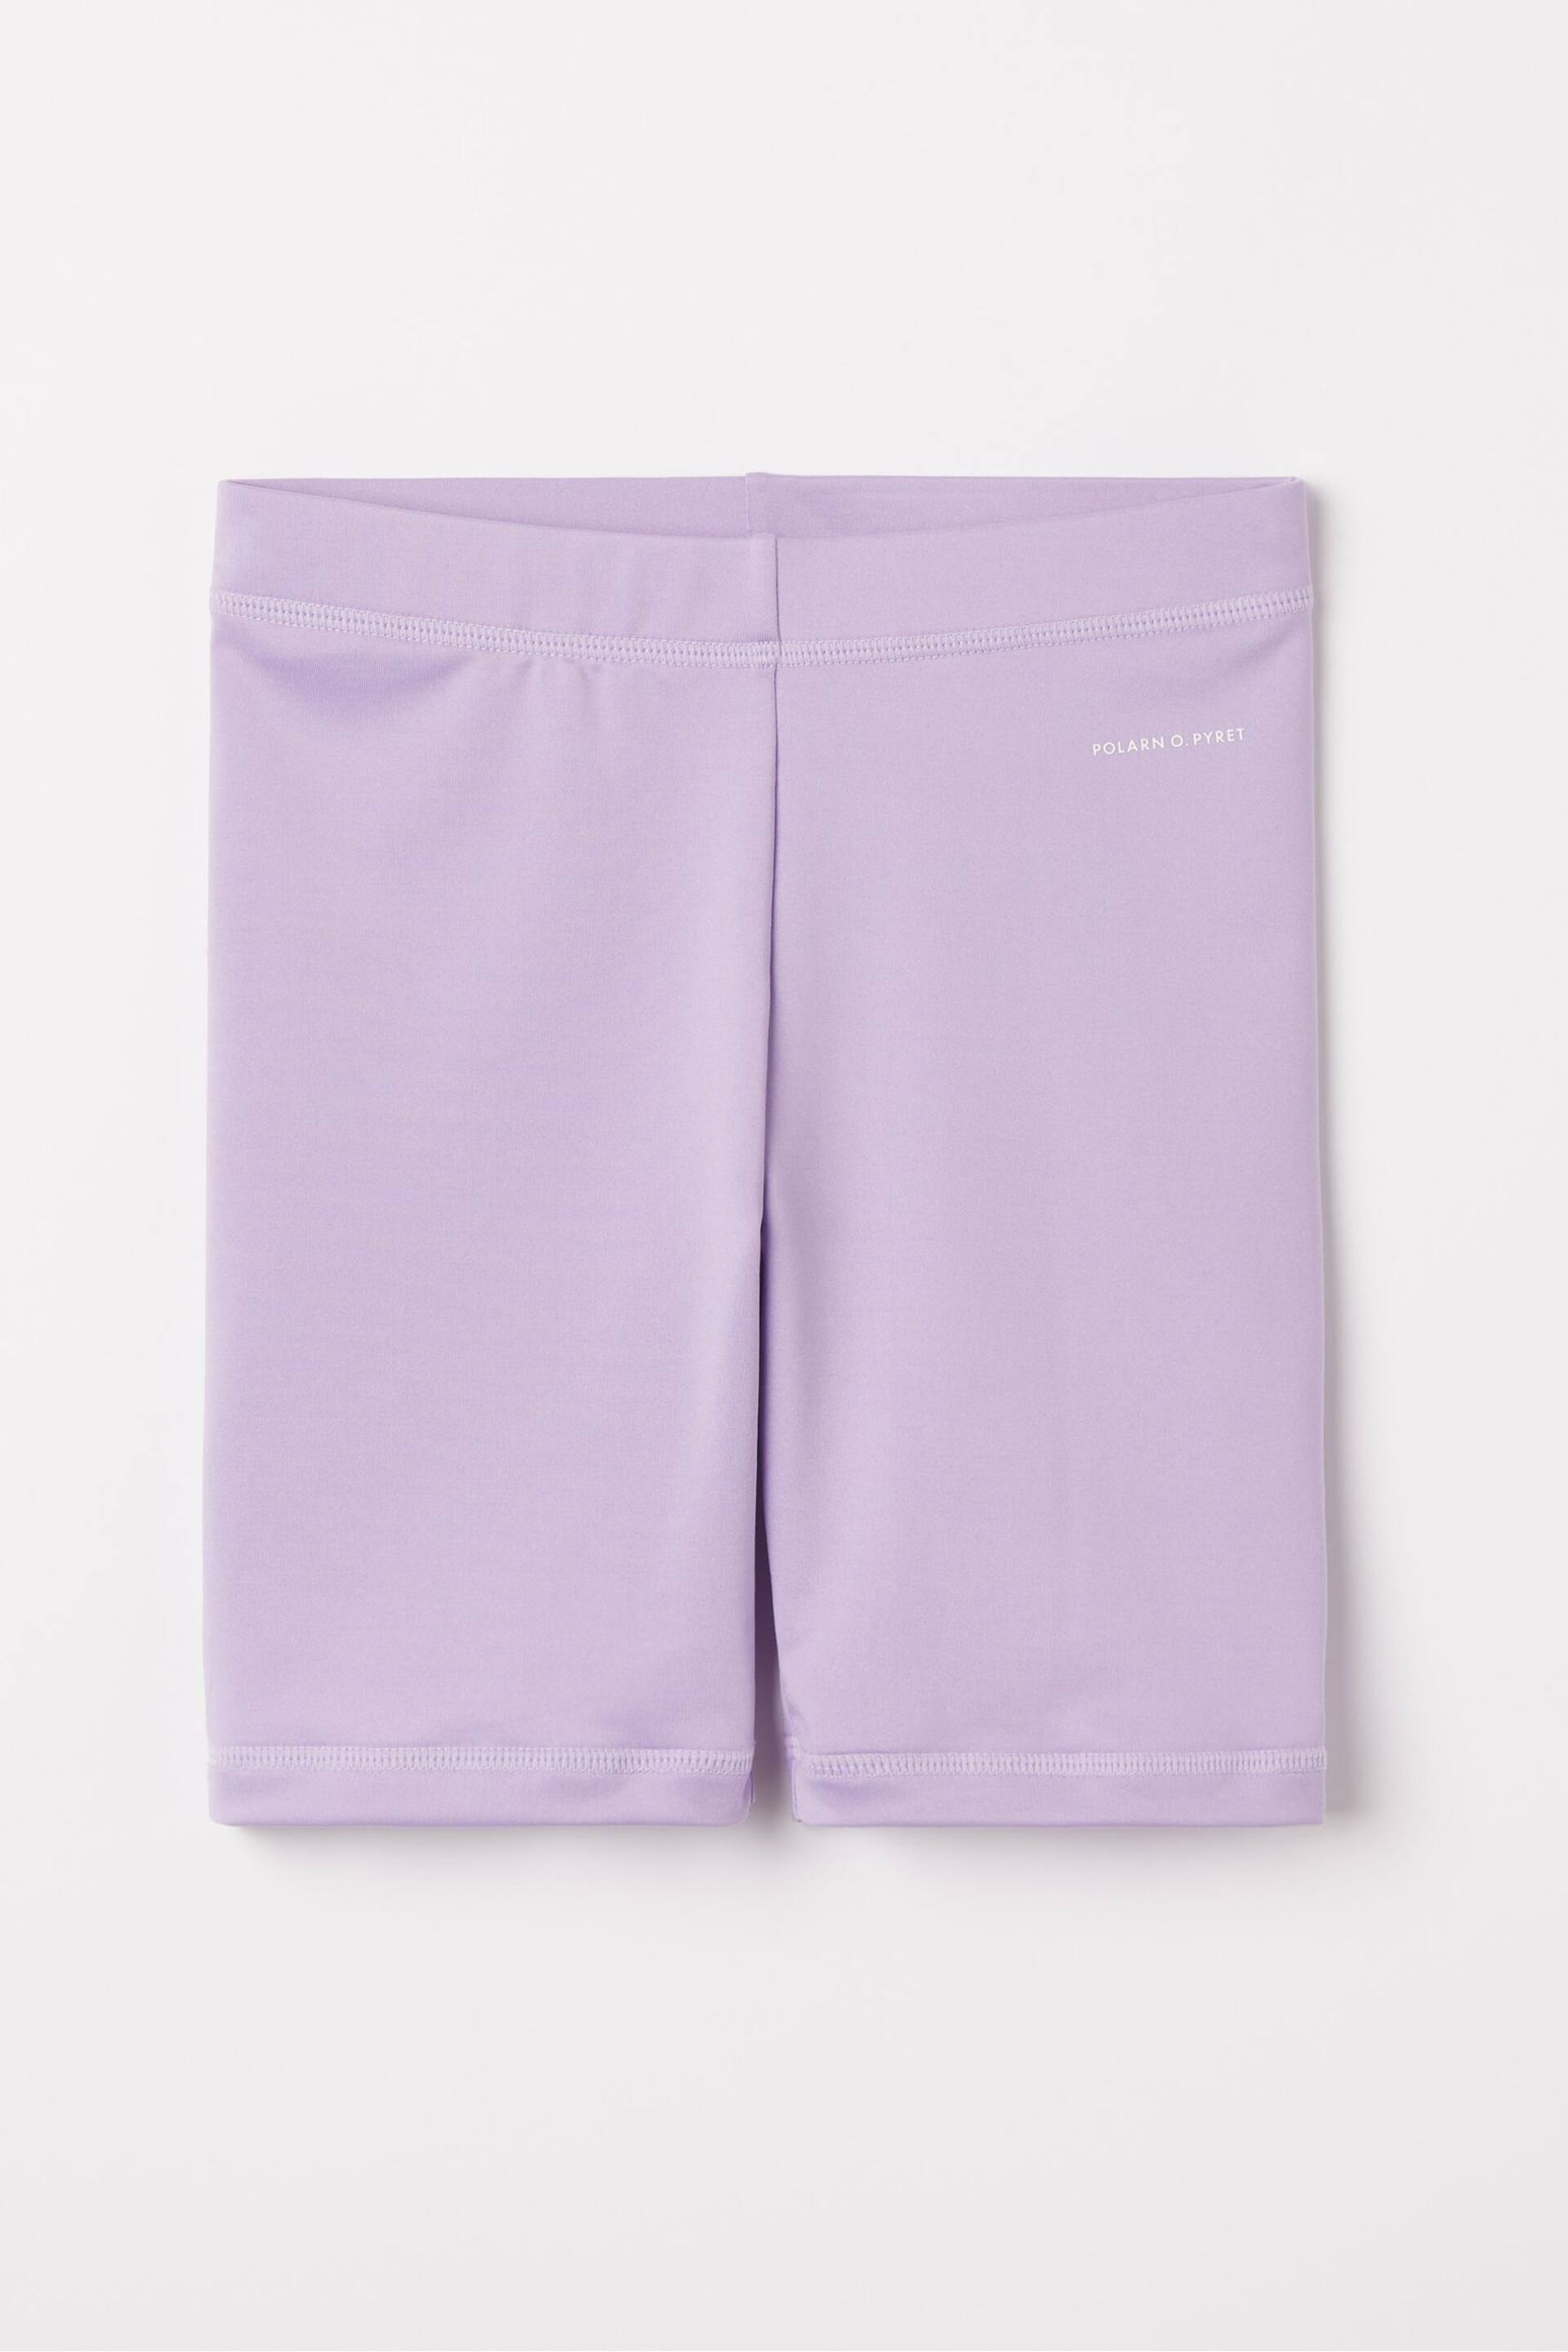 Polarn O Pyret Sunsafe UV Swim Shorts - Image 1 of 2